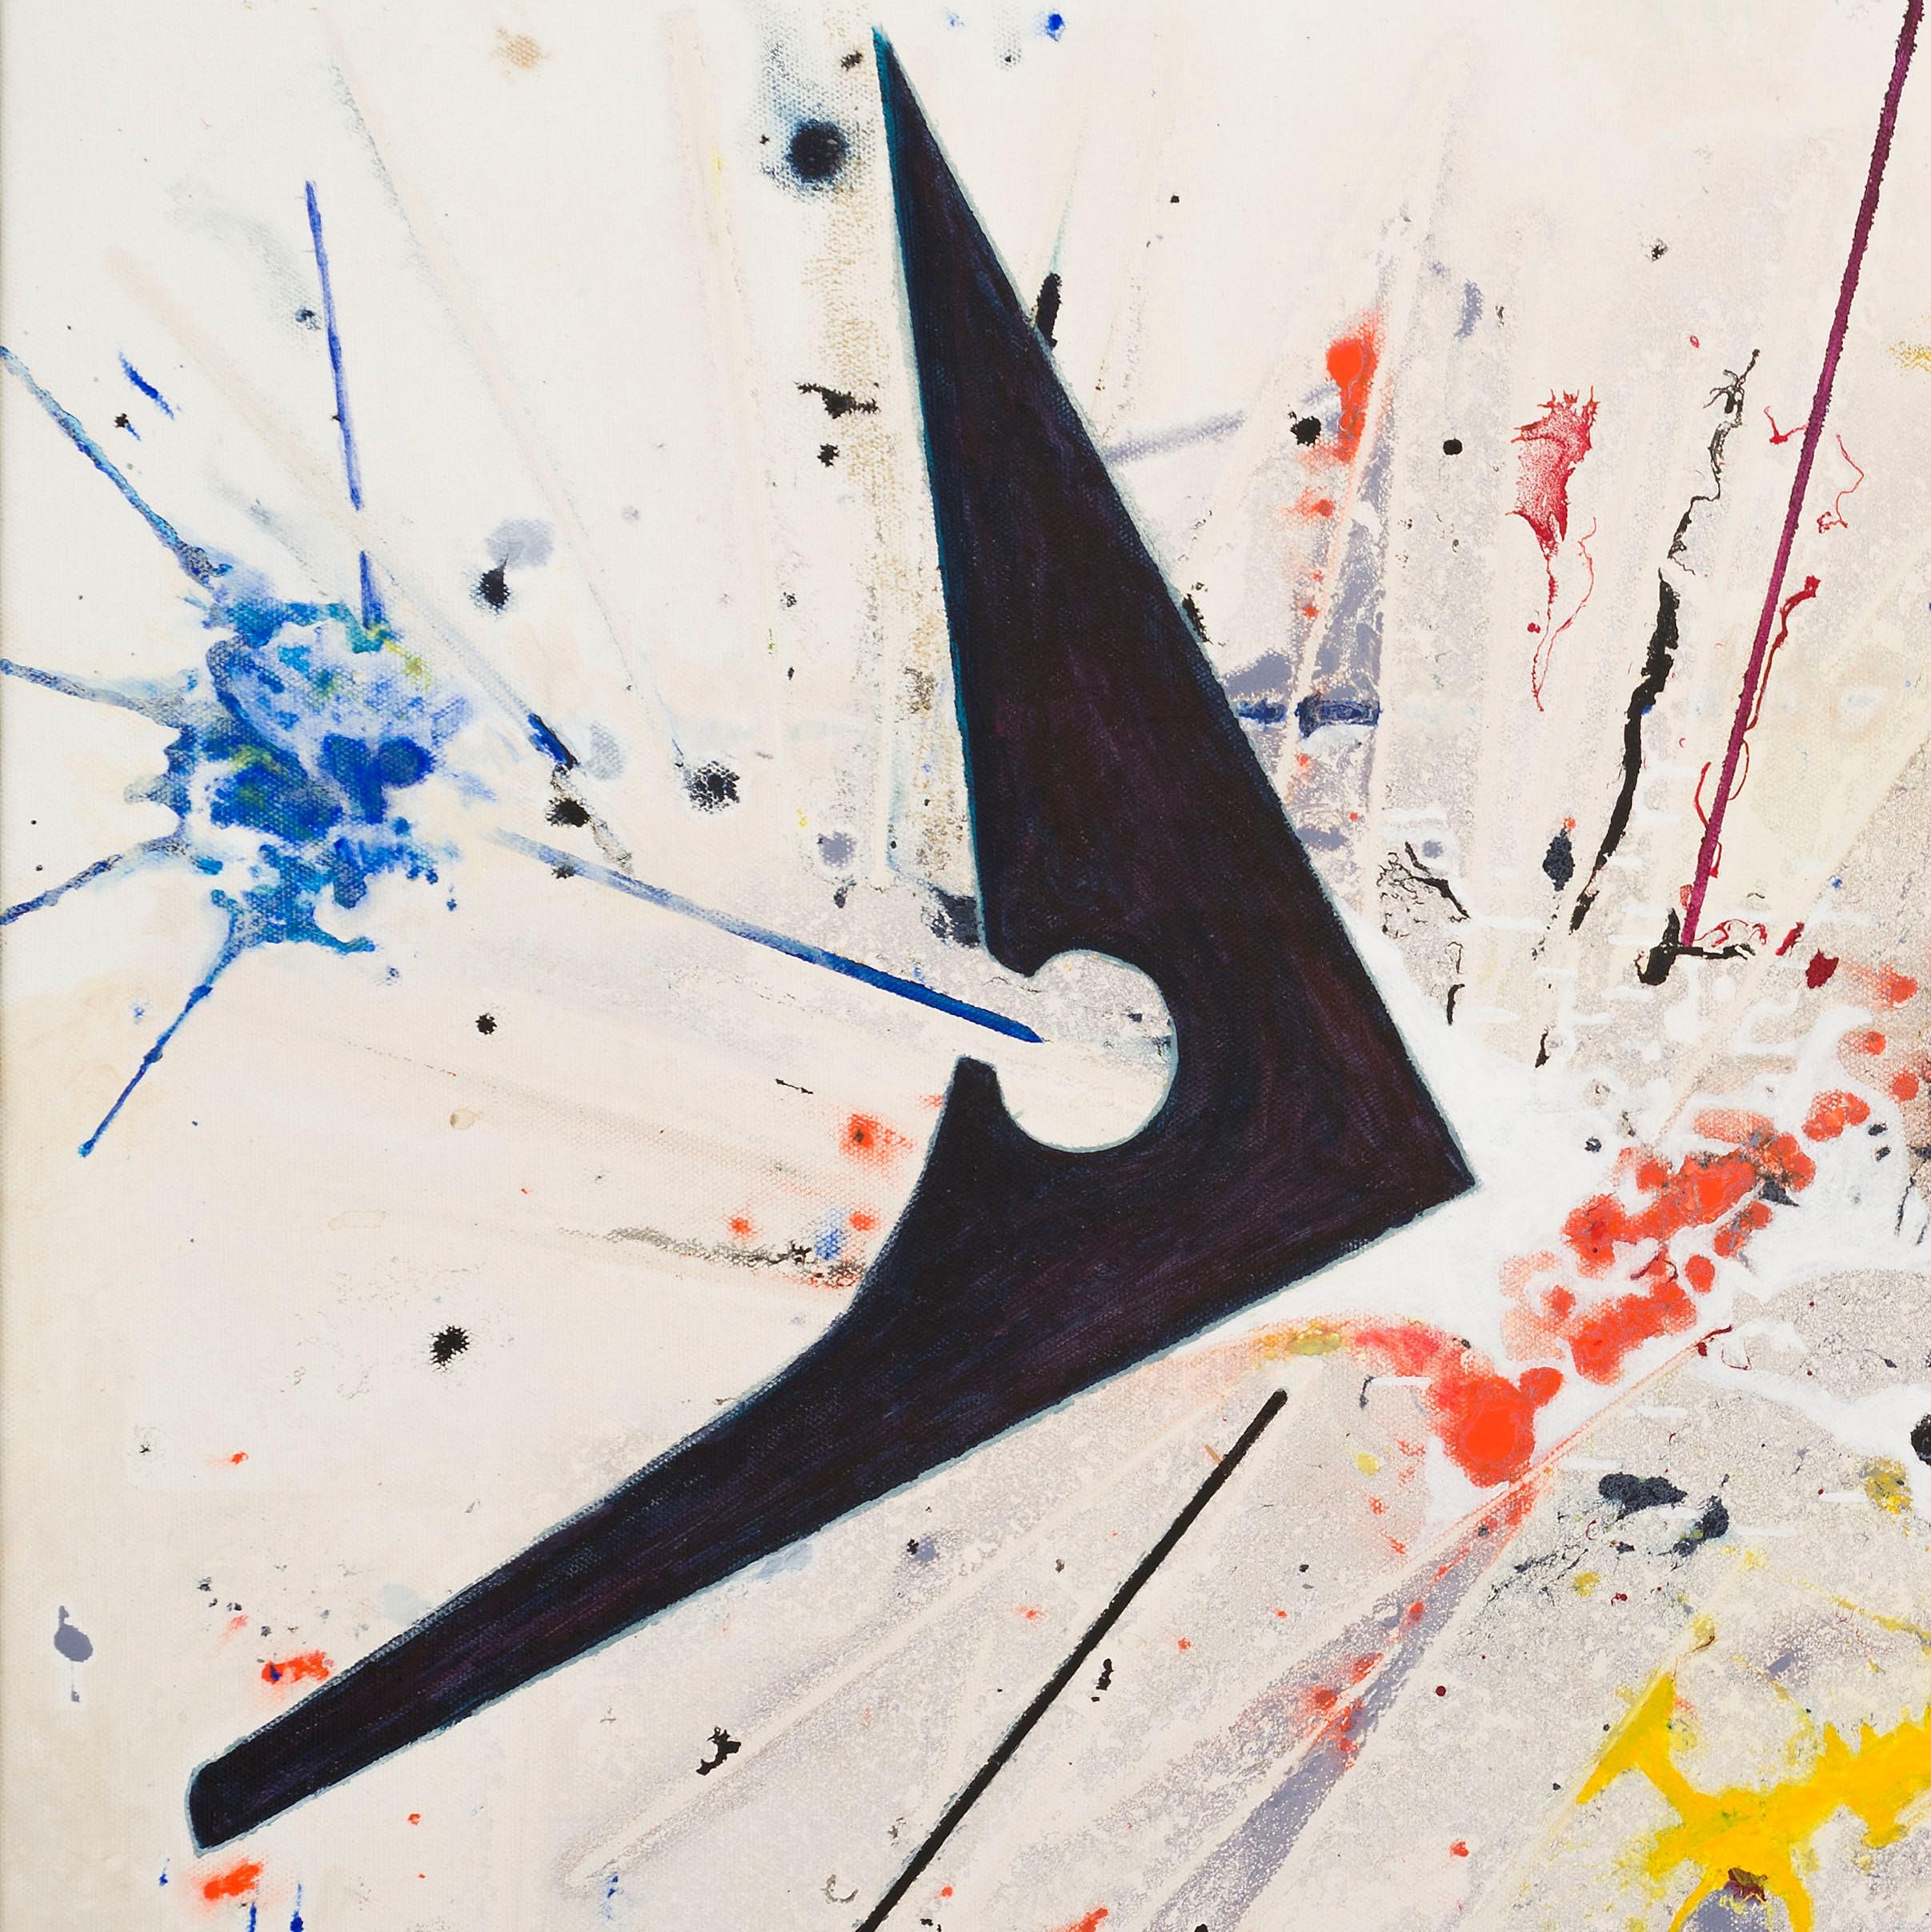 Transitions von Detlef Aderhold – Energetisches zeitgenössisches abstraktes Gemälde (Beige), Abstract Painting, von Detlef E. Aderhold